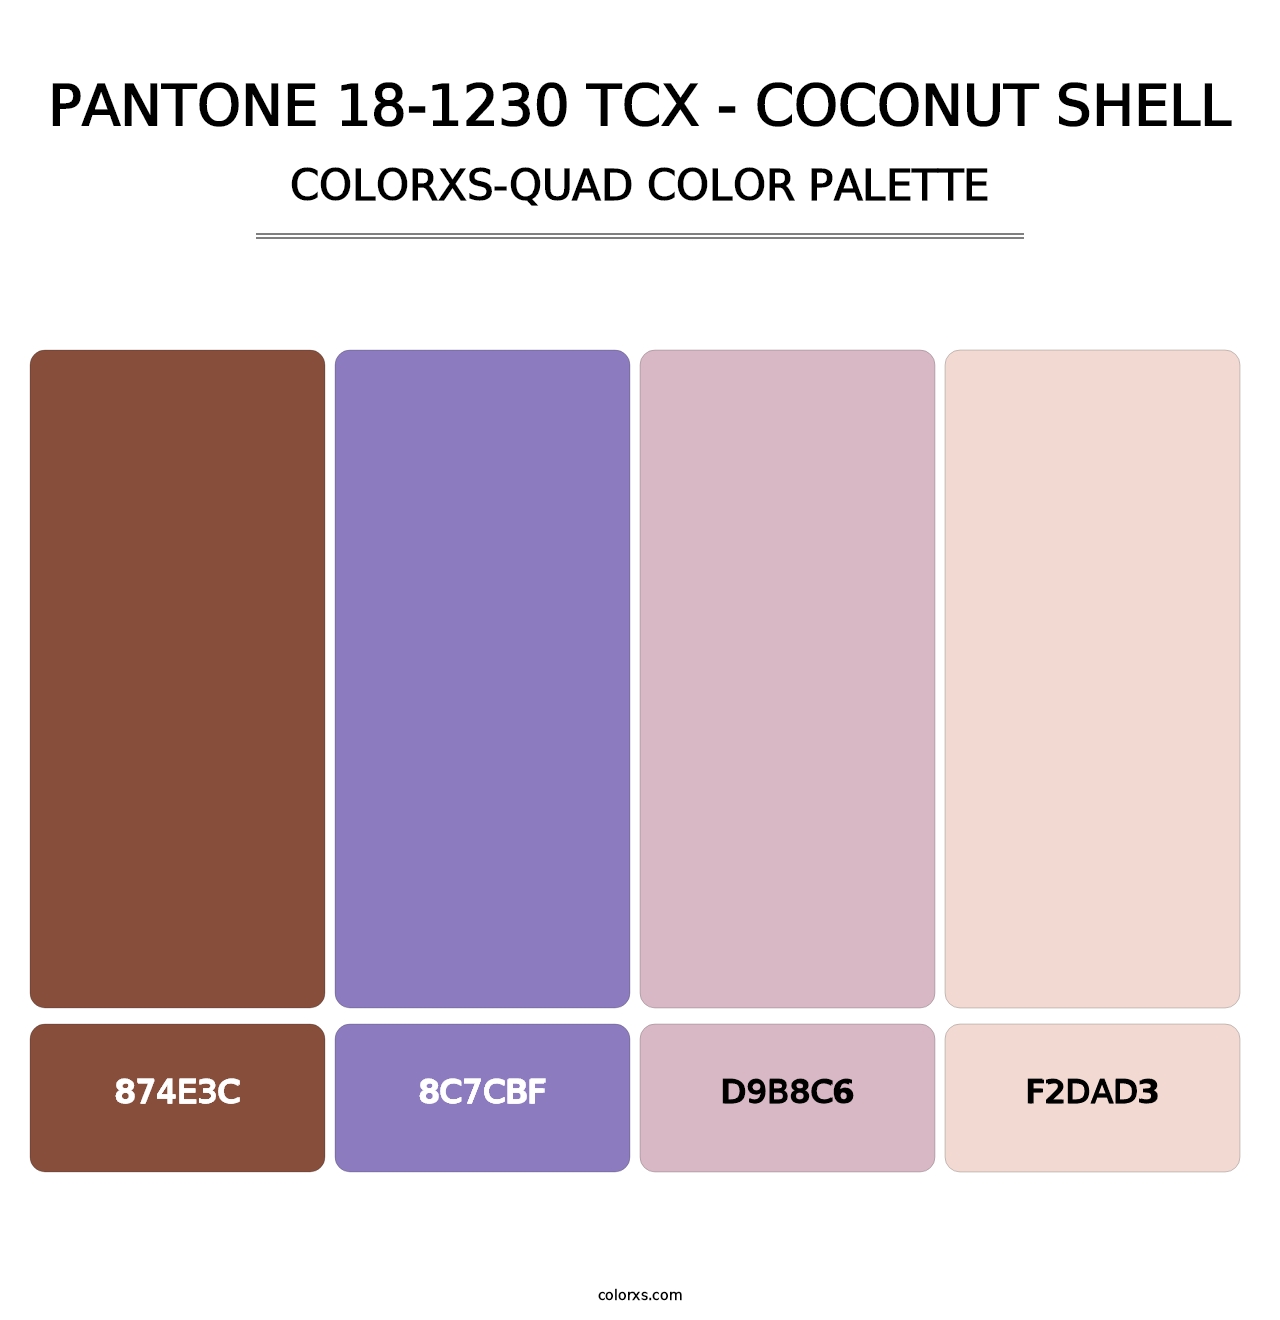 PANTONE 18-1230 TCX - Coconut Shell - Colorxs Quad Palette